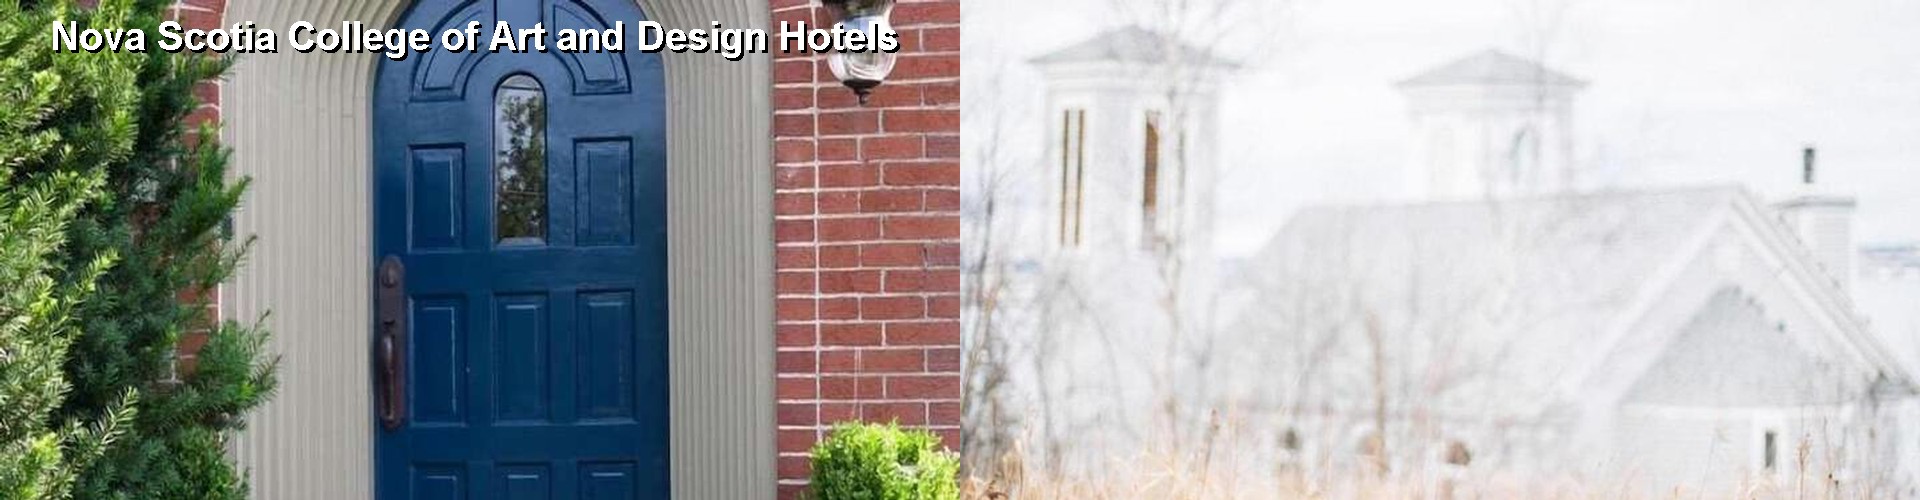 5 Best Hotels near Nova Scotia College of Art and Design